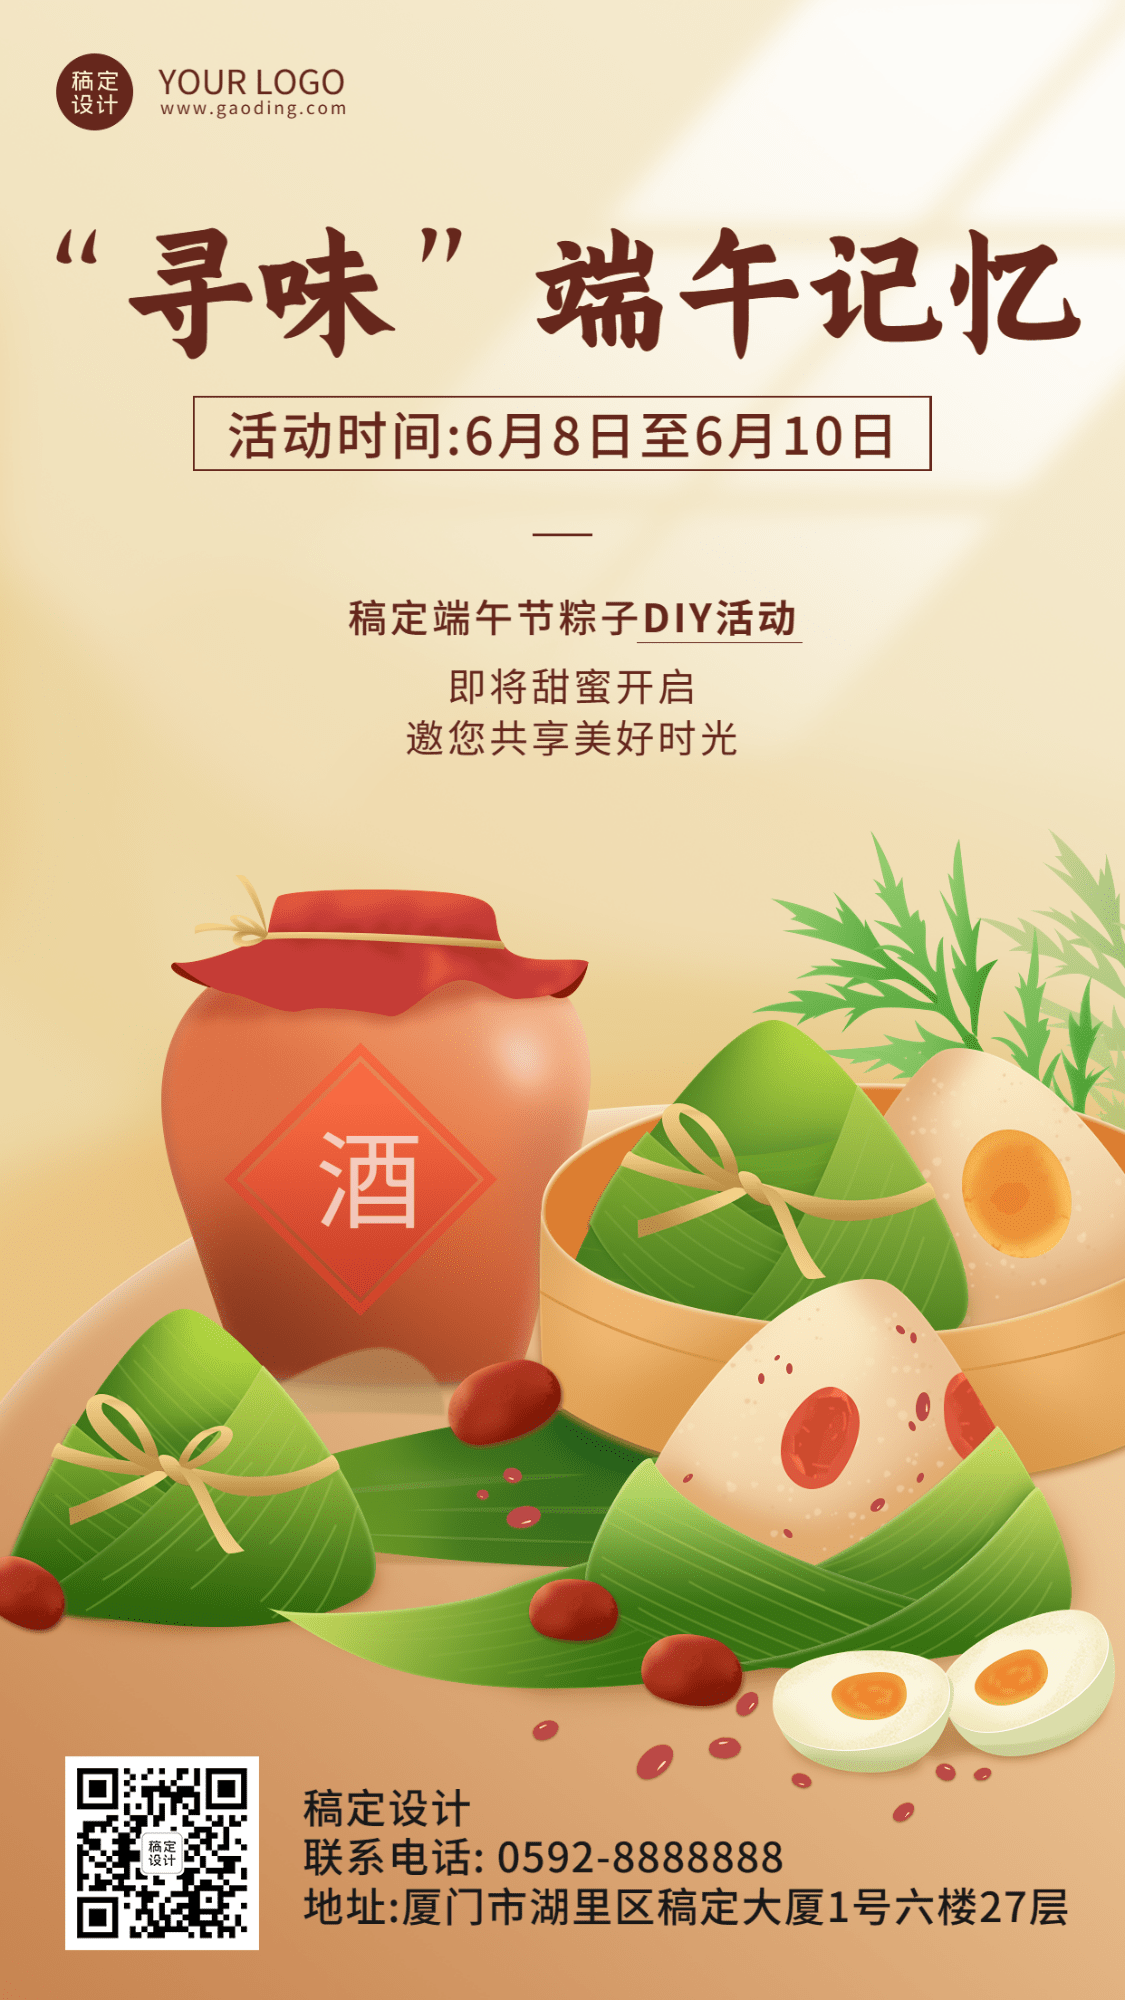 端午节粽子DIY活动插画手机海报预览效果